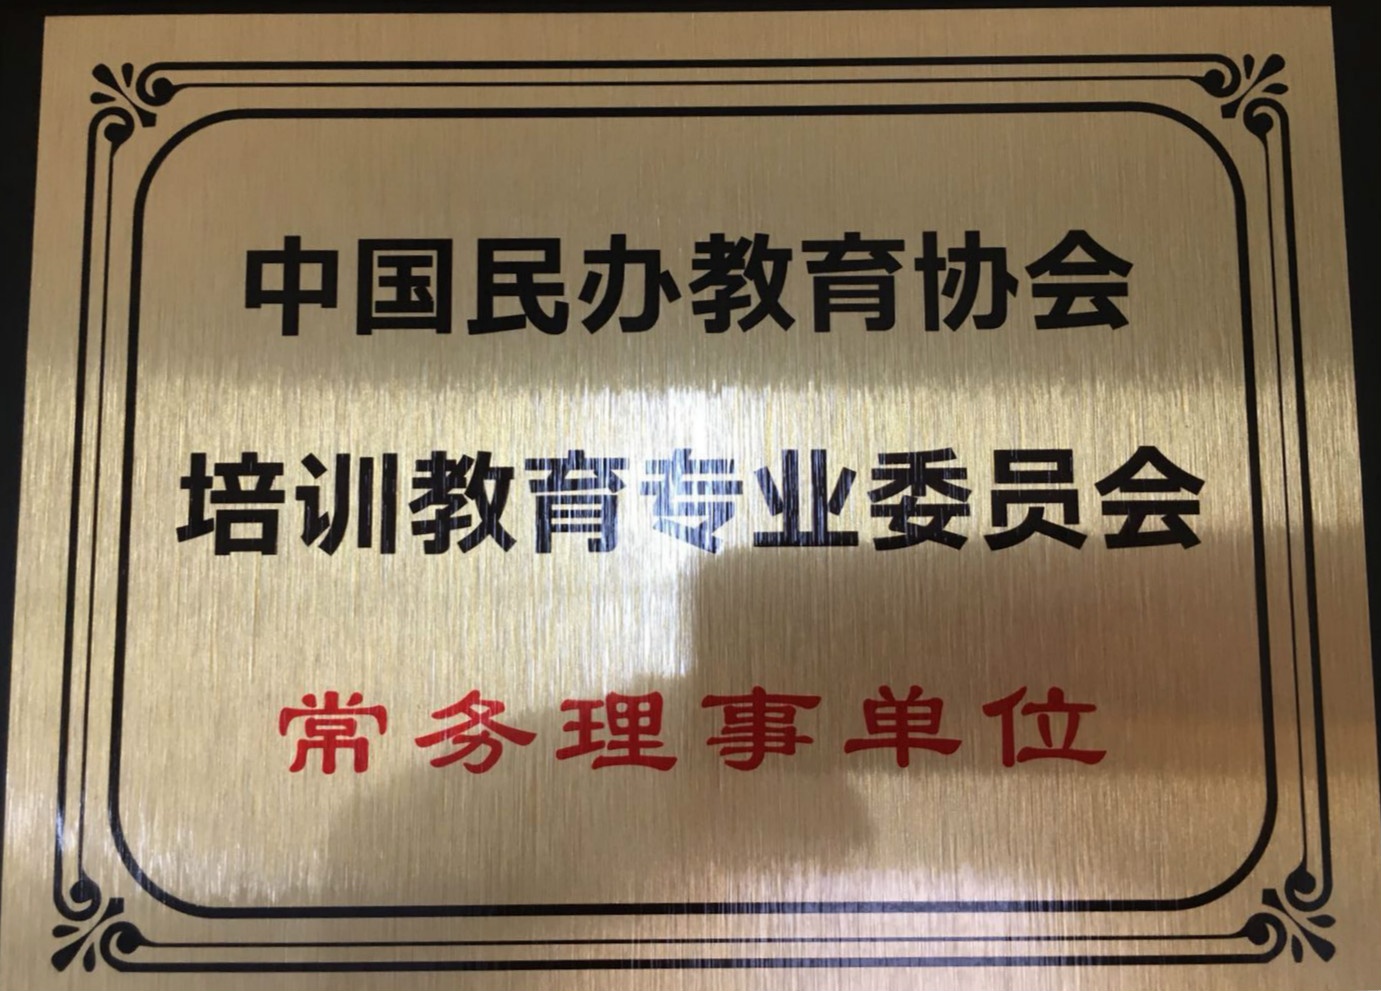 龙港麦职电脑财会培训学校荣誉